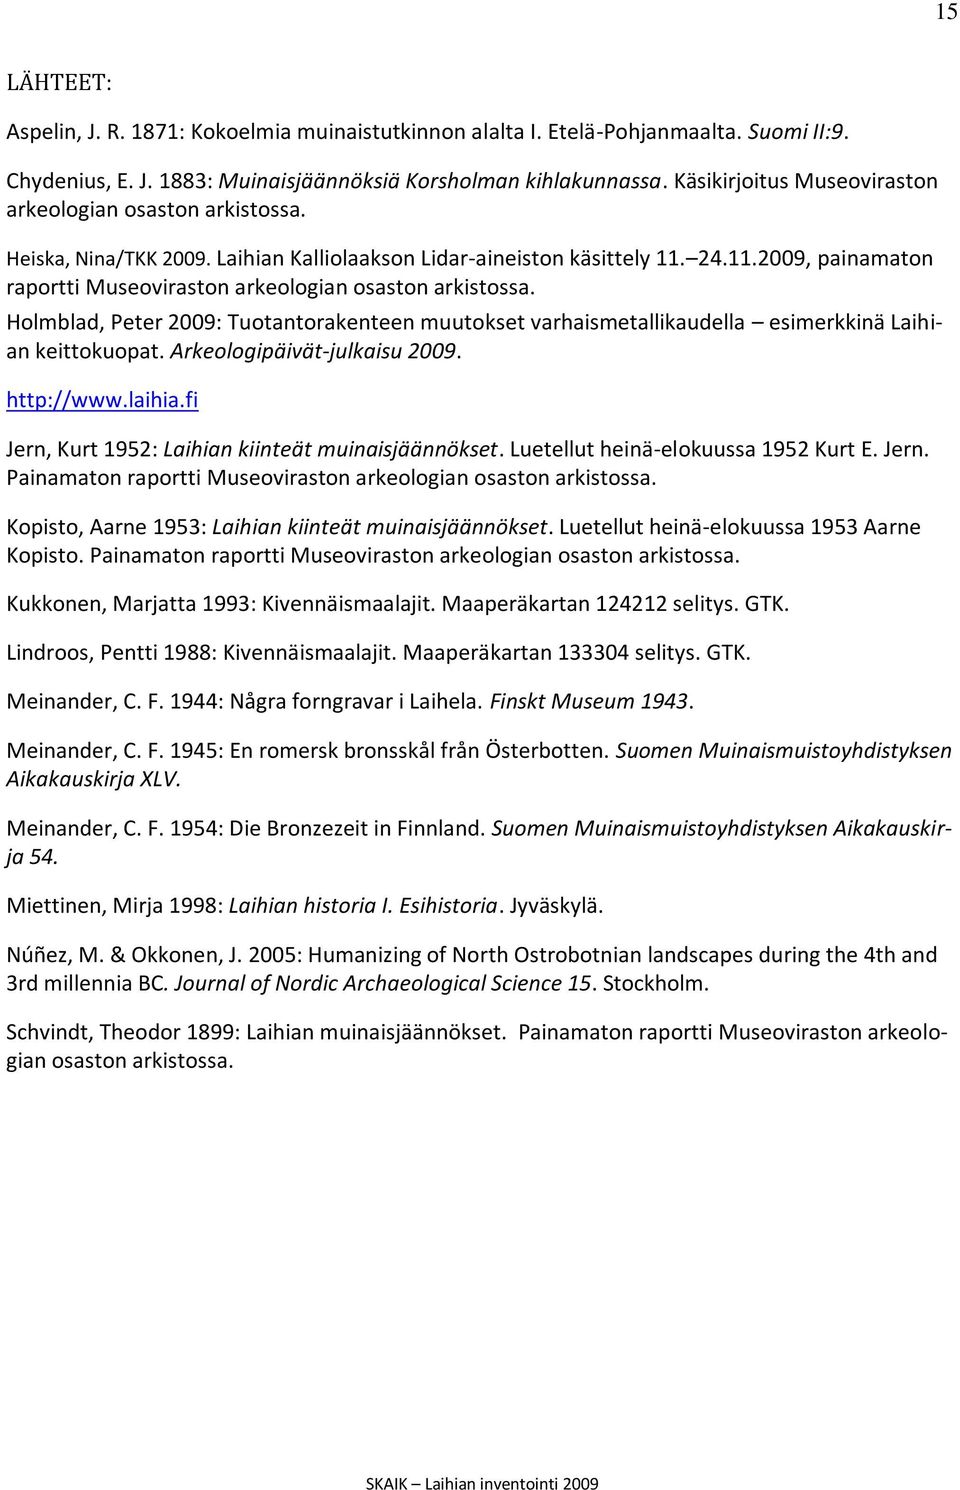 Holmblad, Peter 2009: Tuotantorakenteen muutokset varhaismetallikaudella esimerkkinä Laihian keittokuopat. Arkeologipäivät-julkaisu 2009. http://www.laihia.